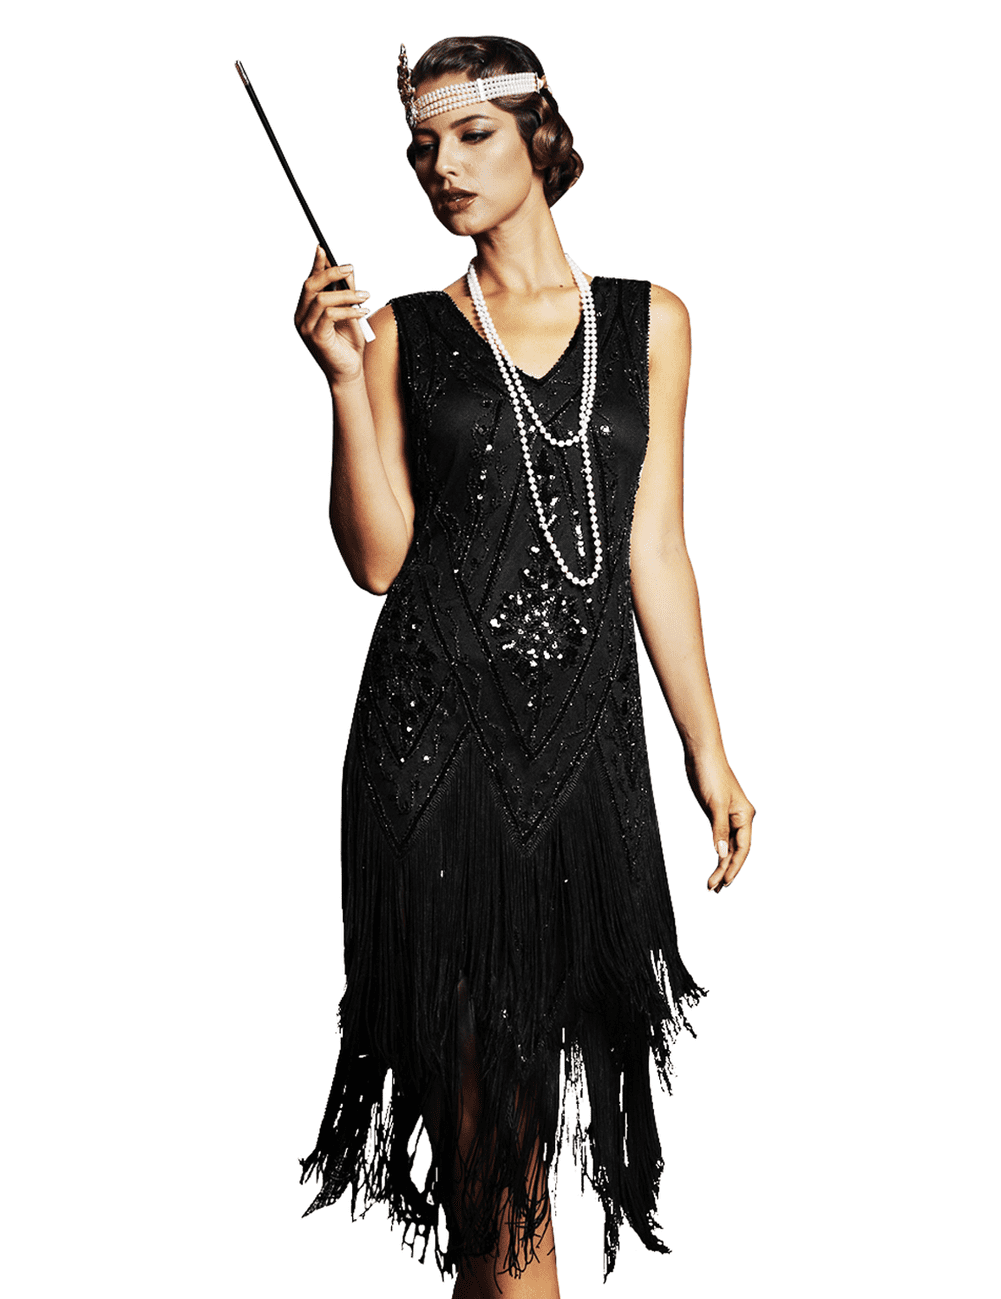 1920’s dresses